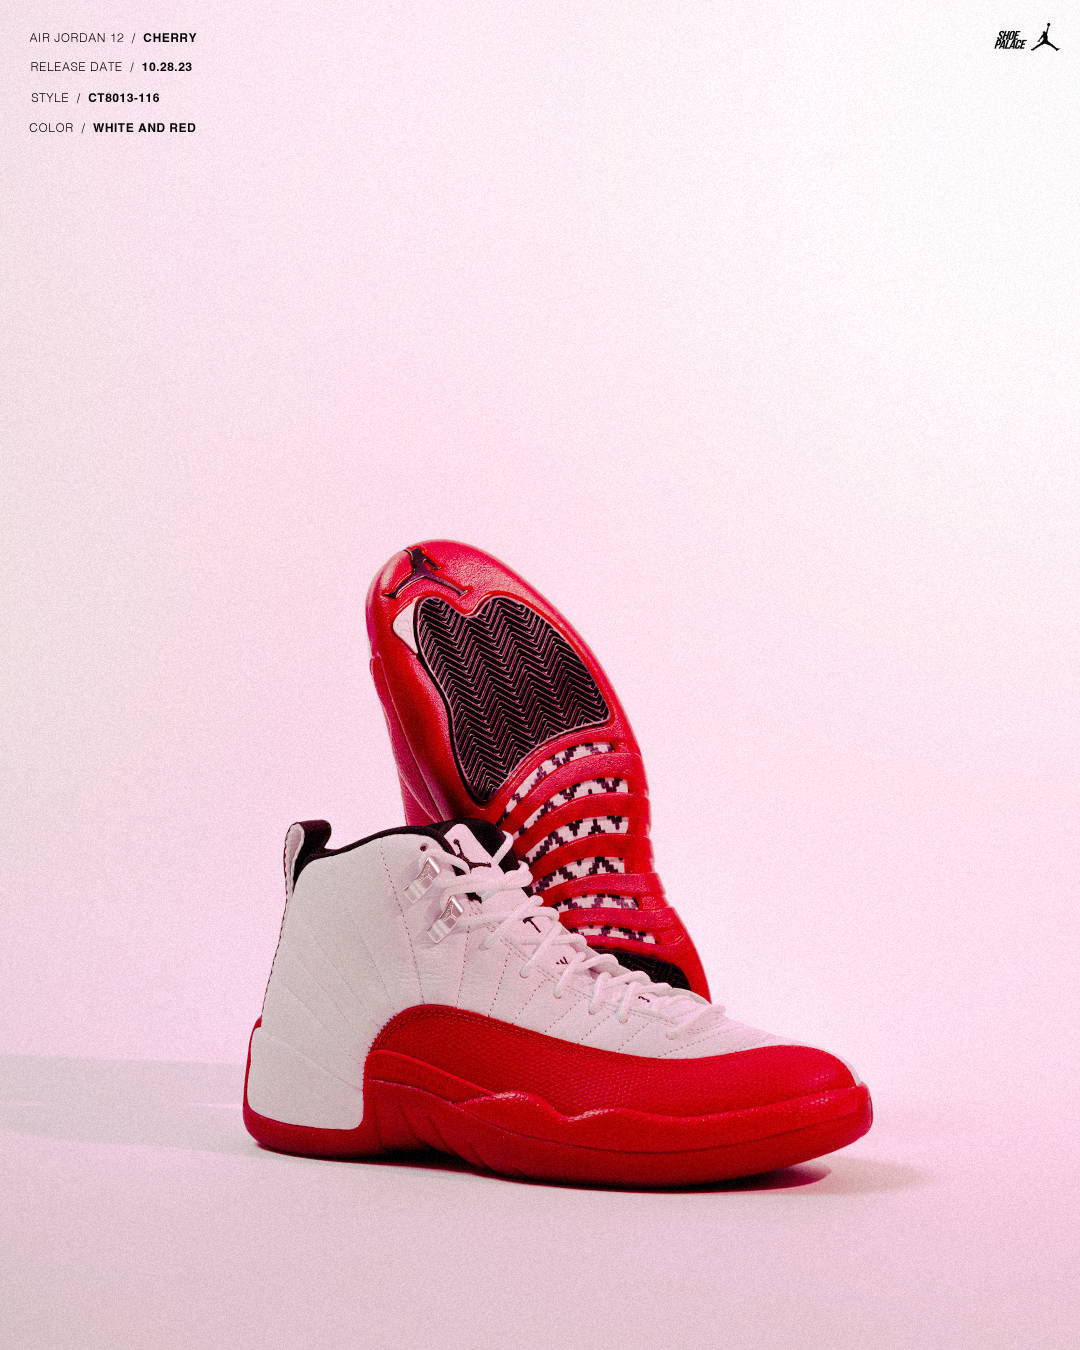 Air Jordan 12 “Cherry” 1